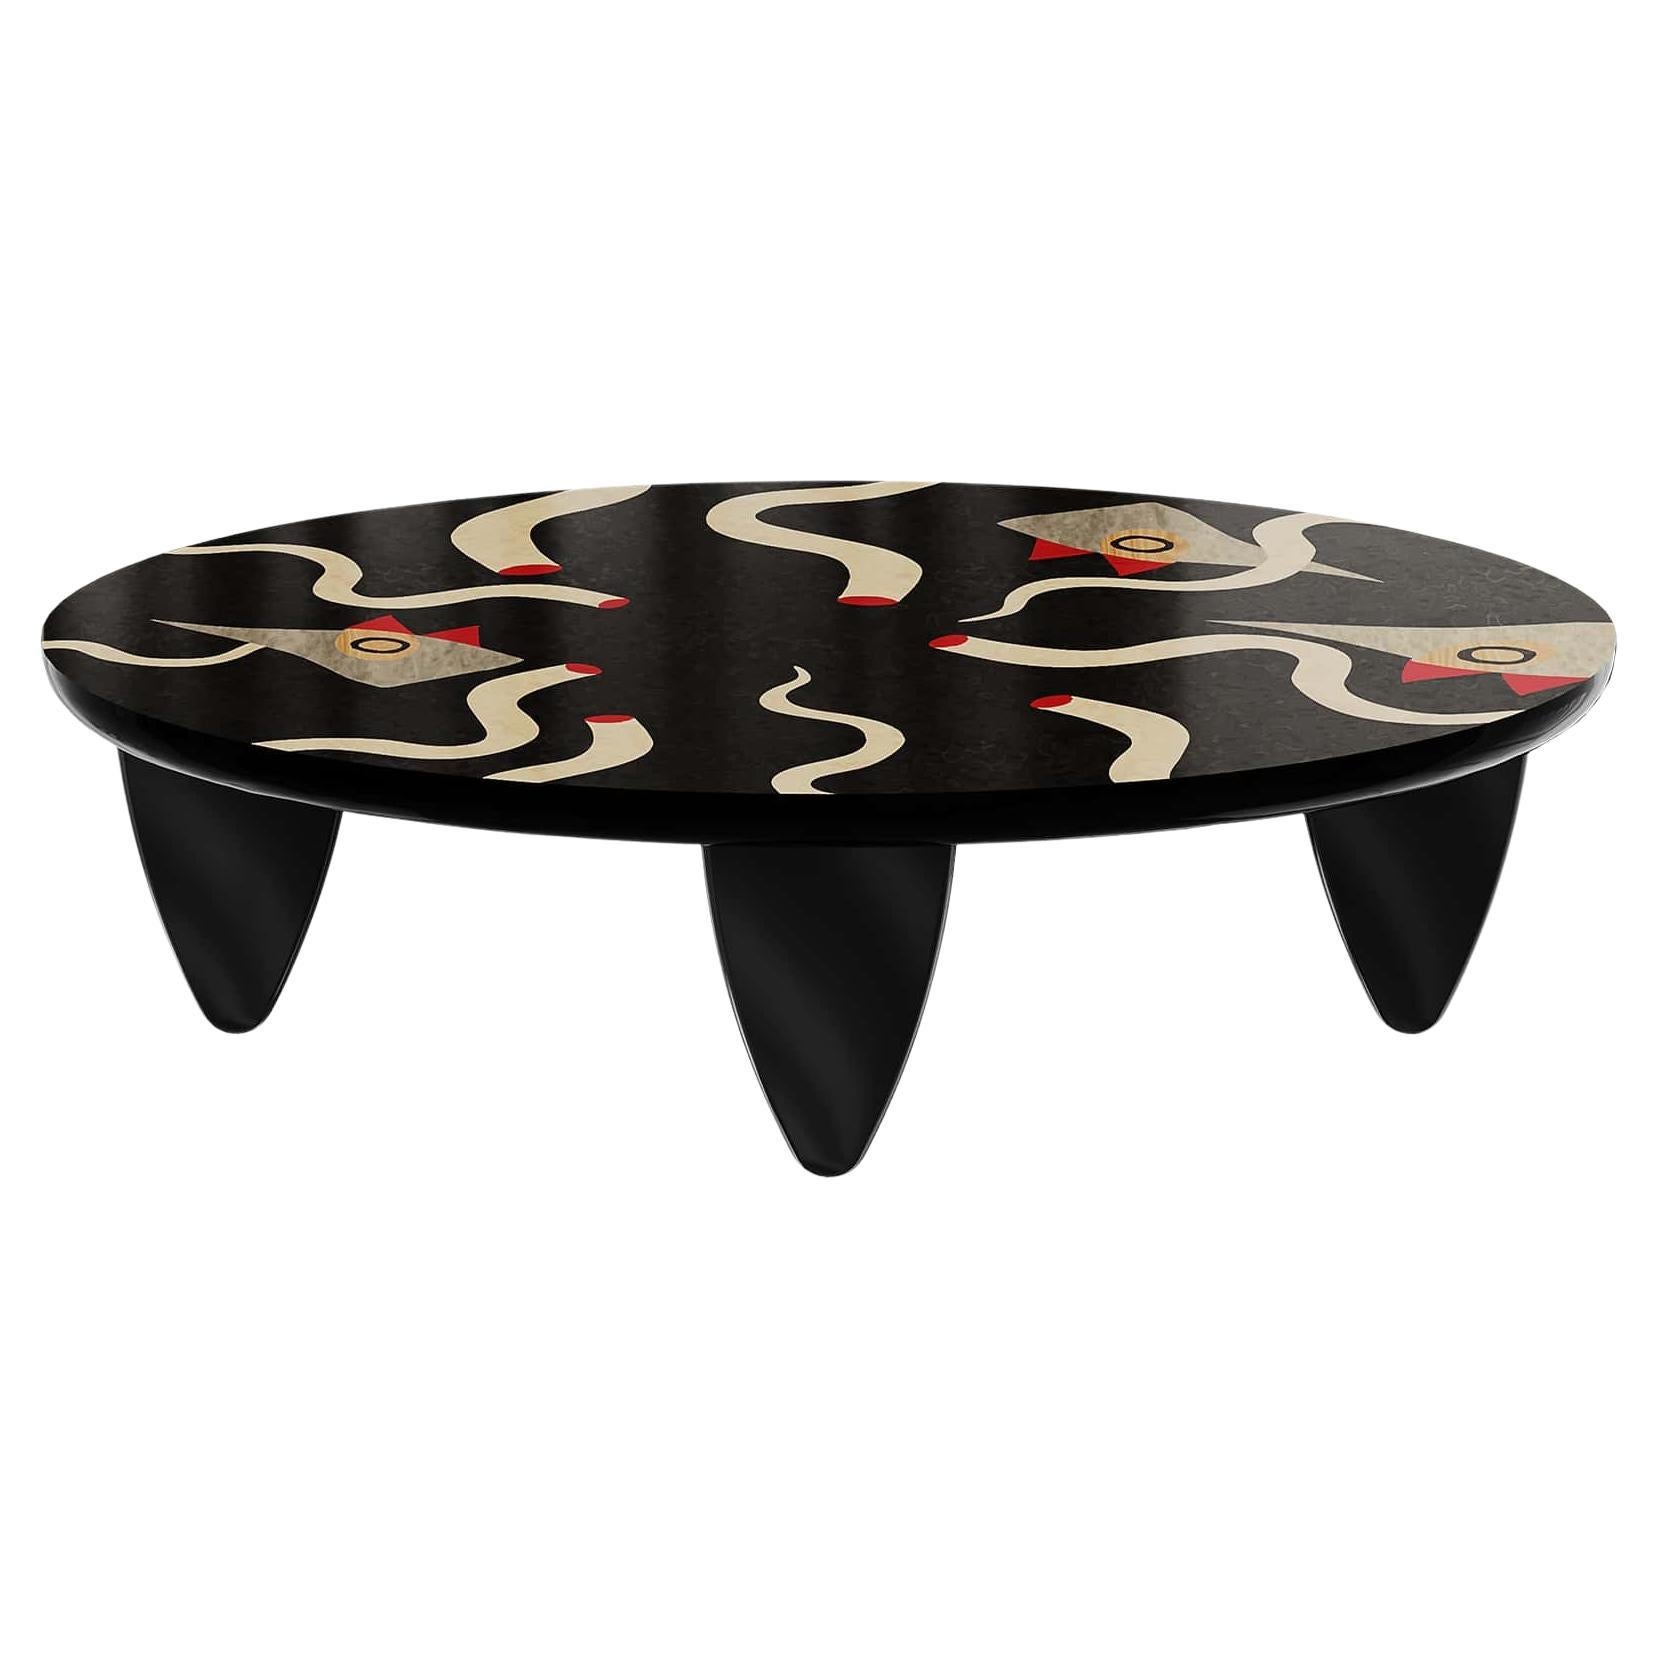 Table basse ovale moderne et organique avec figures surréalistes en bois marquetée noire